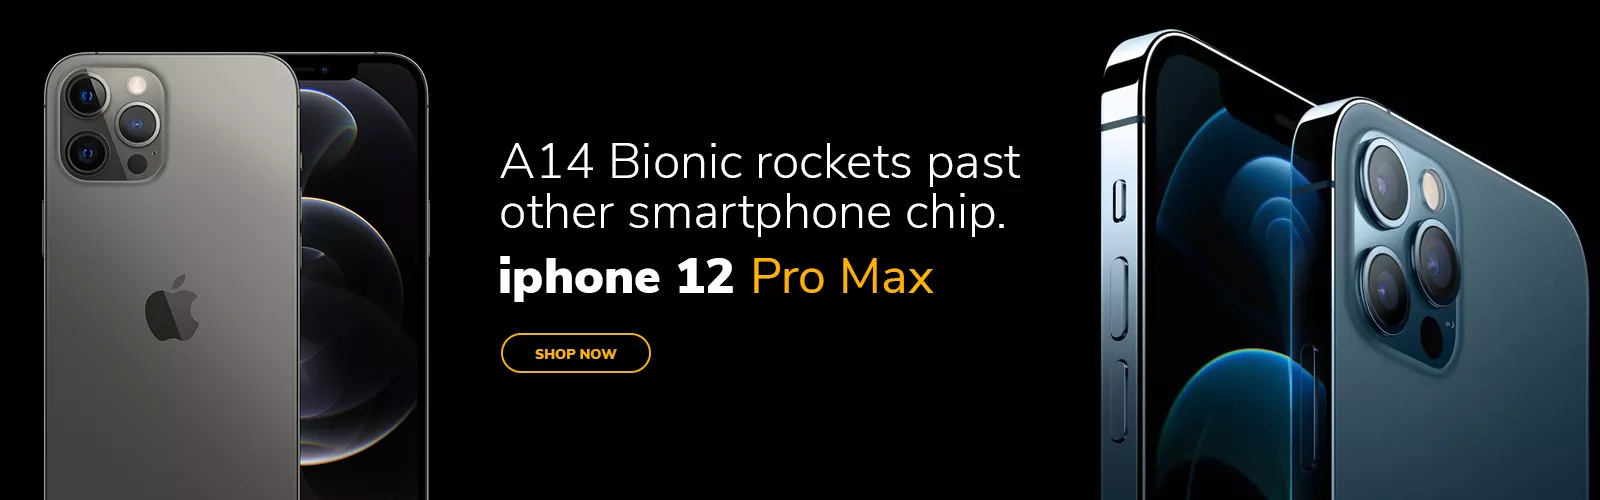 Iphone 11 pro max